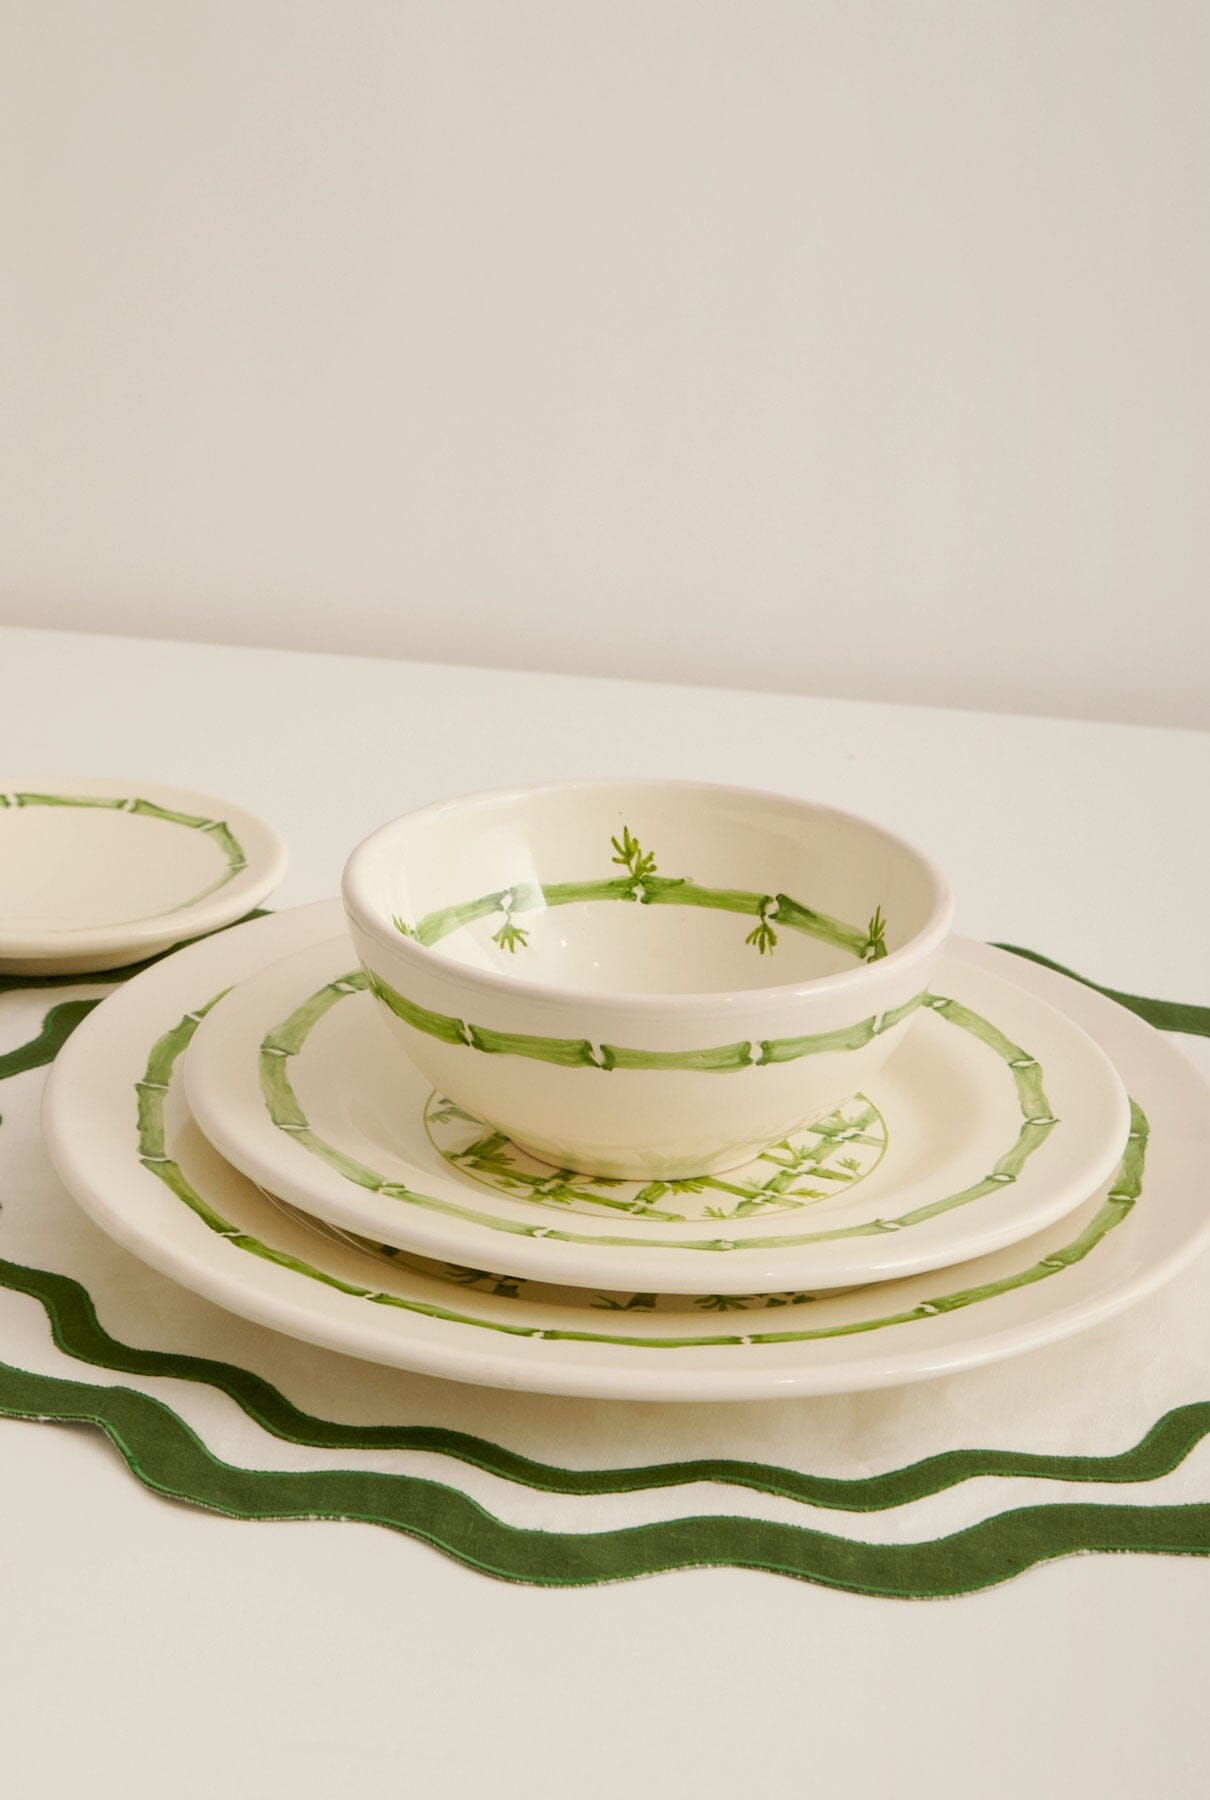 Set completo con bowl Tableware IUKA 